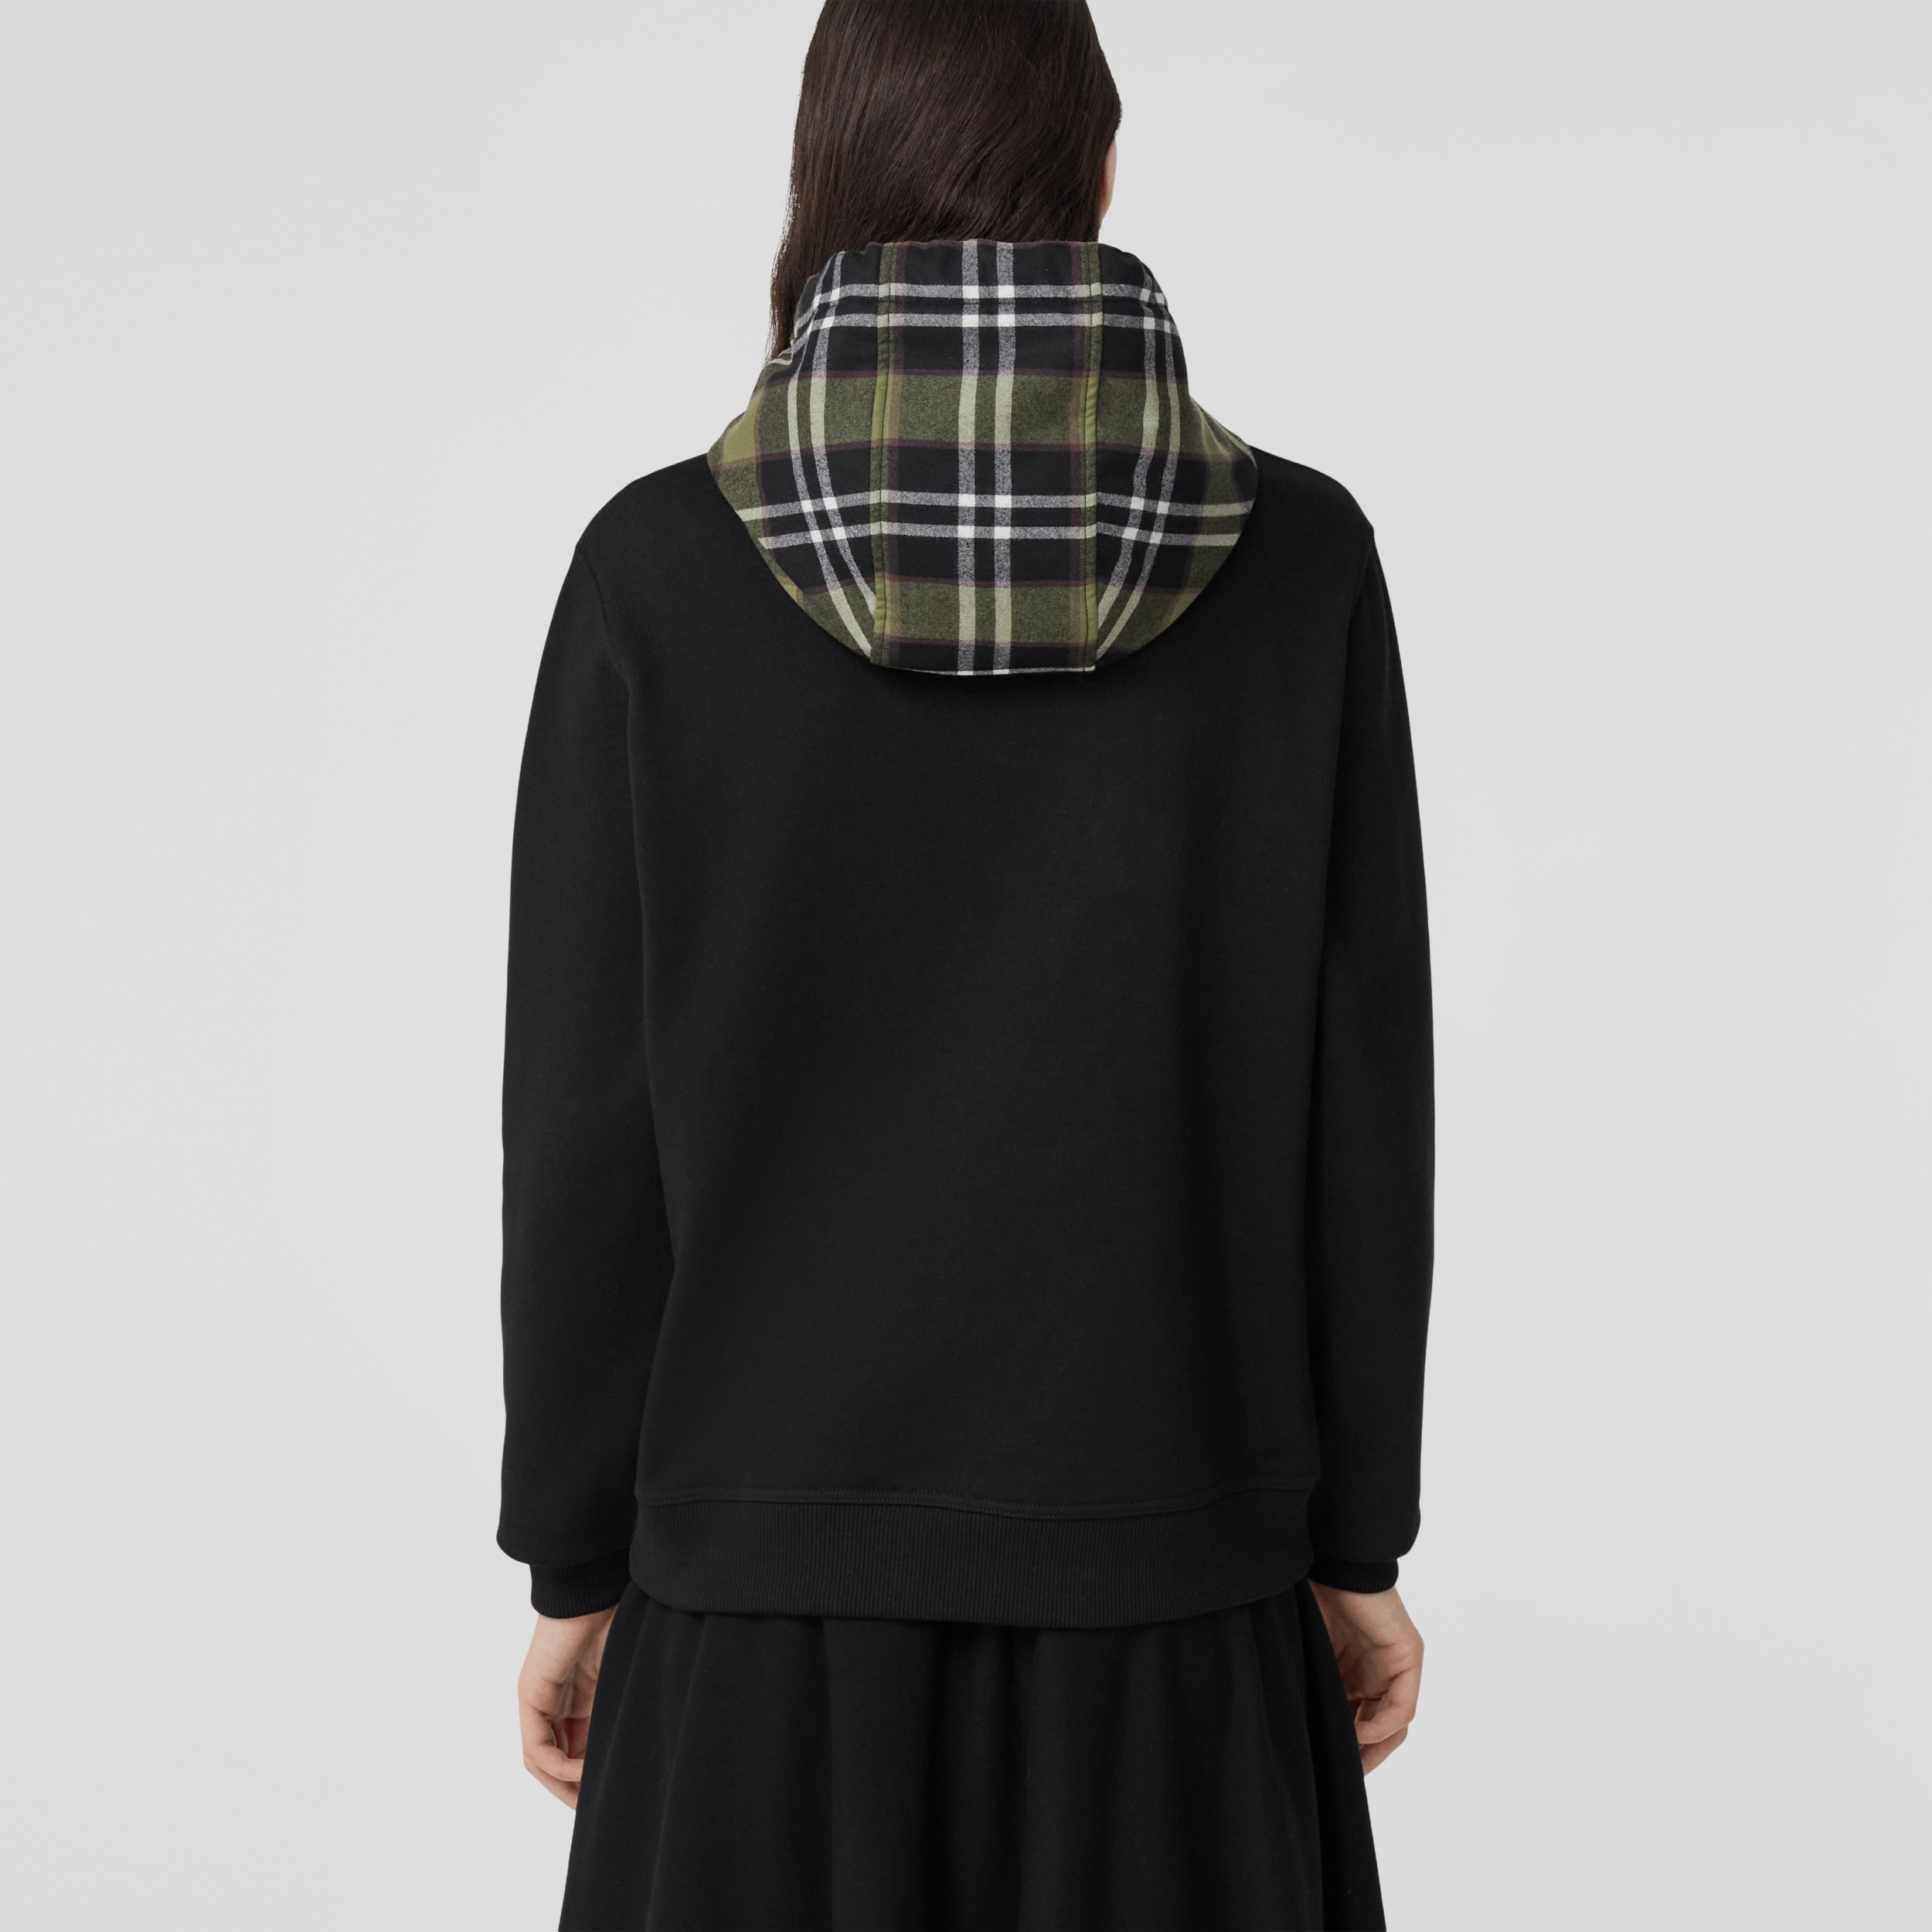 購買 女士寬鬆拉鍊連帽衫 | 黑色 | MYPROTEIN™ 台灣官方網站